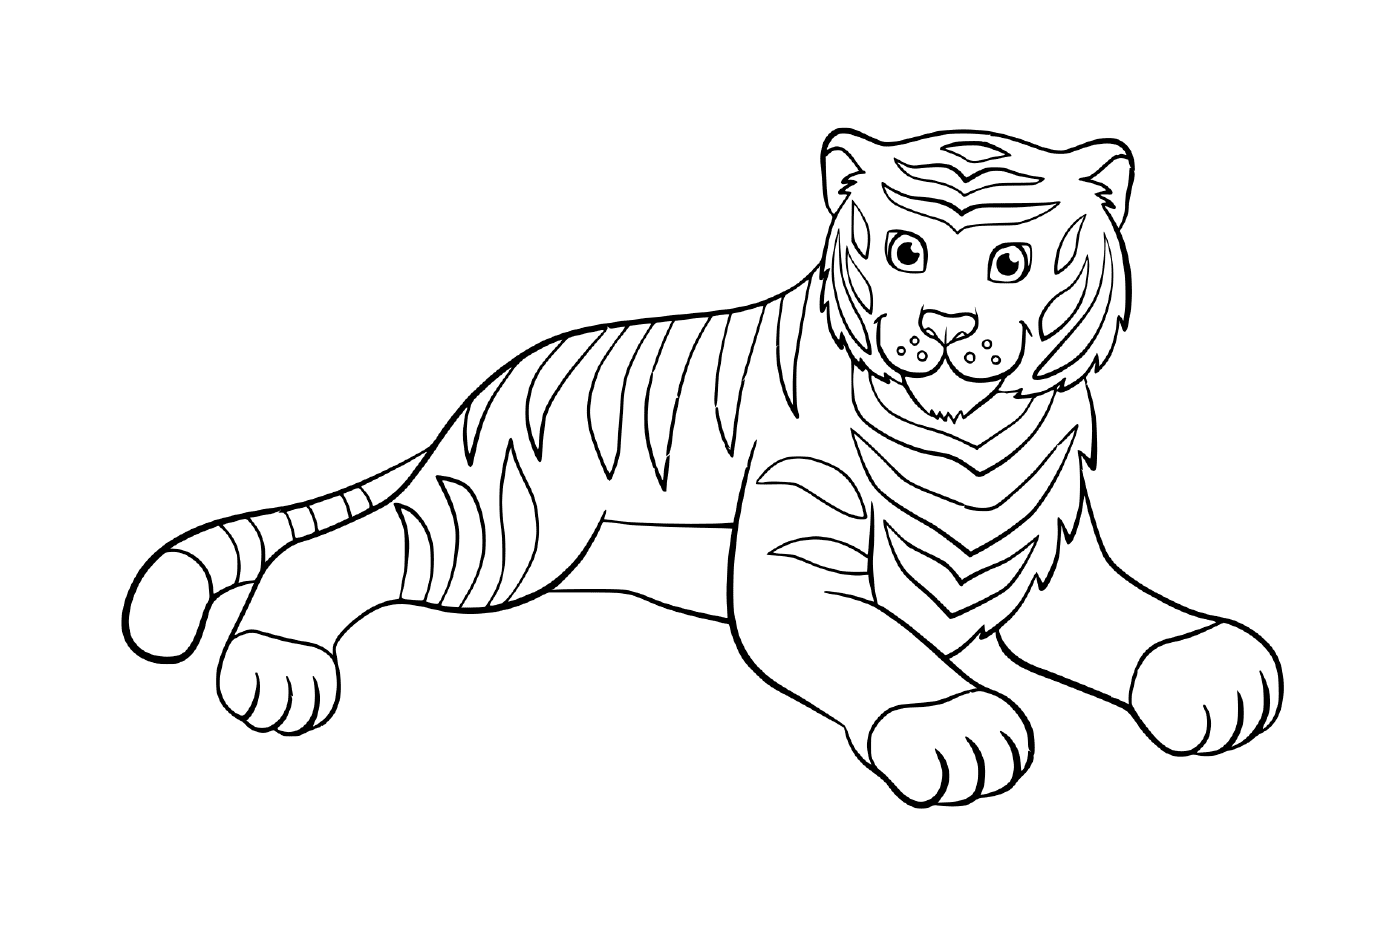  un tigre descansando adorablemente 